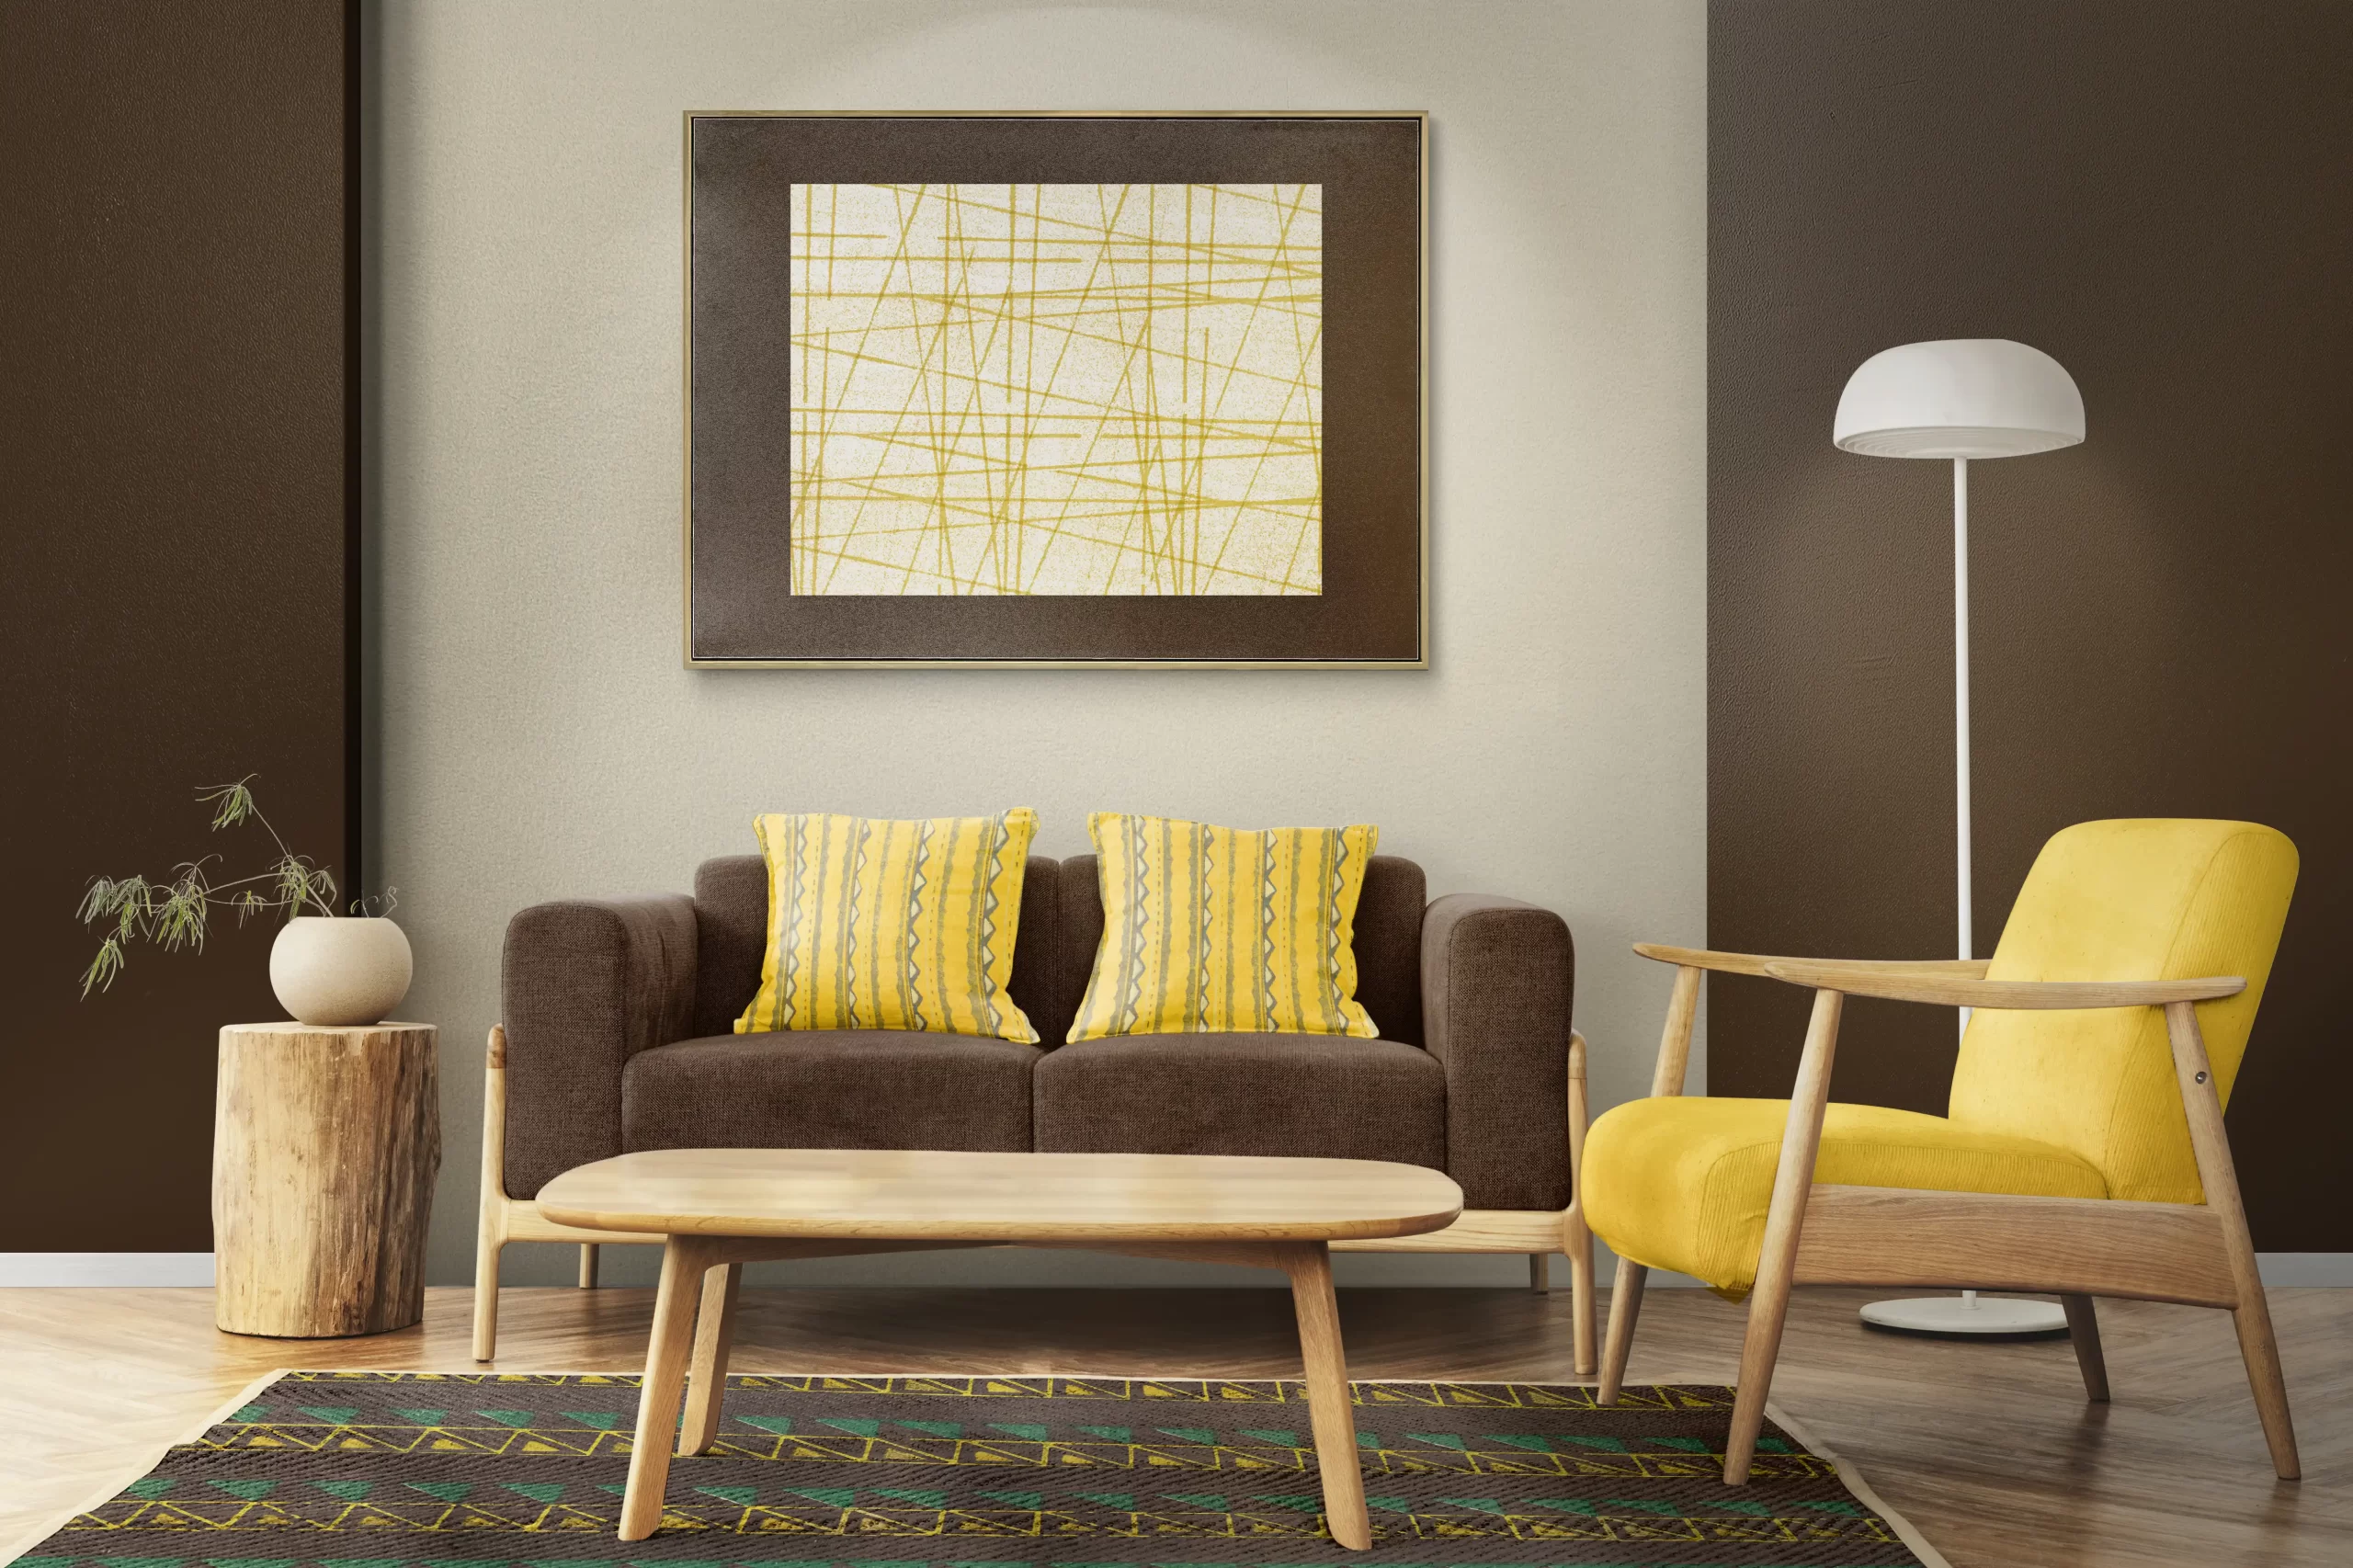 مبل زرد و مشکی که مبل مشکی ها دارای بالشت های زرد میباشد و میز چوبی نیز در وسط اتاق قرار دارد و تابلو نقاشی نیز به دیوار وصل شده است